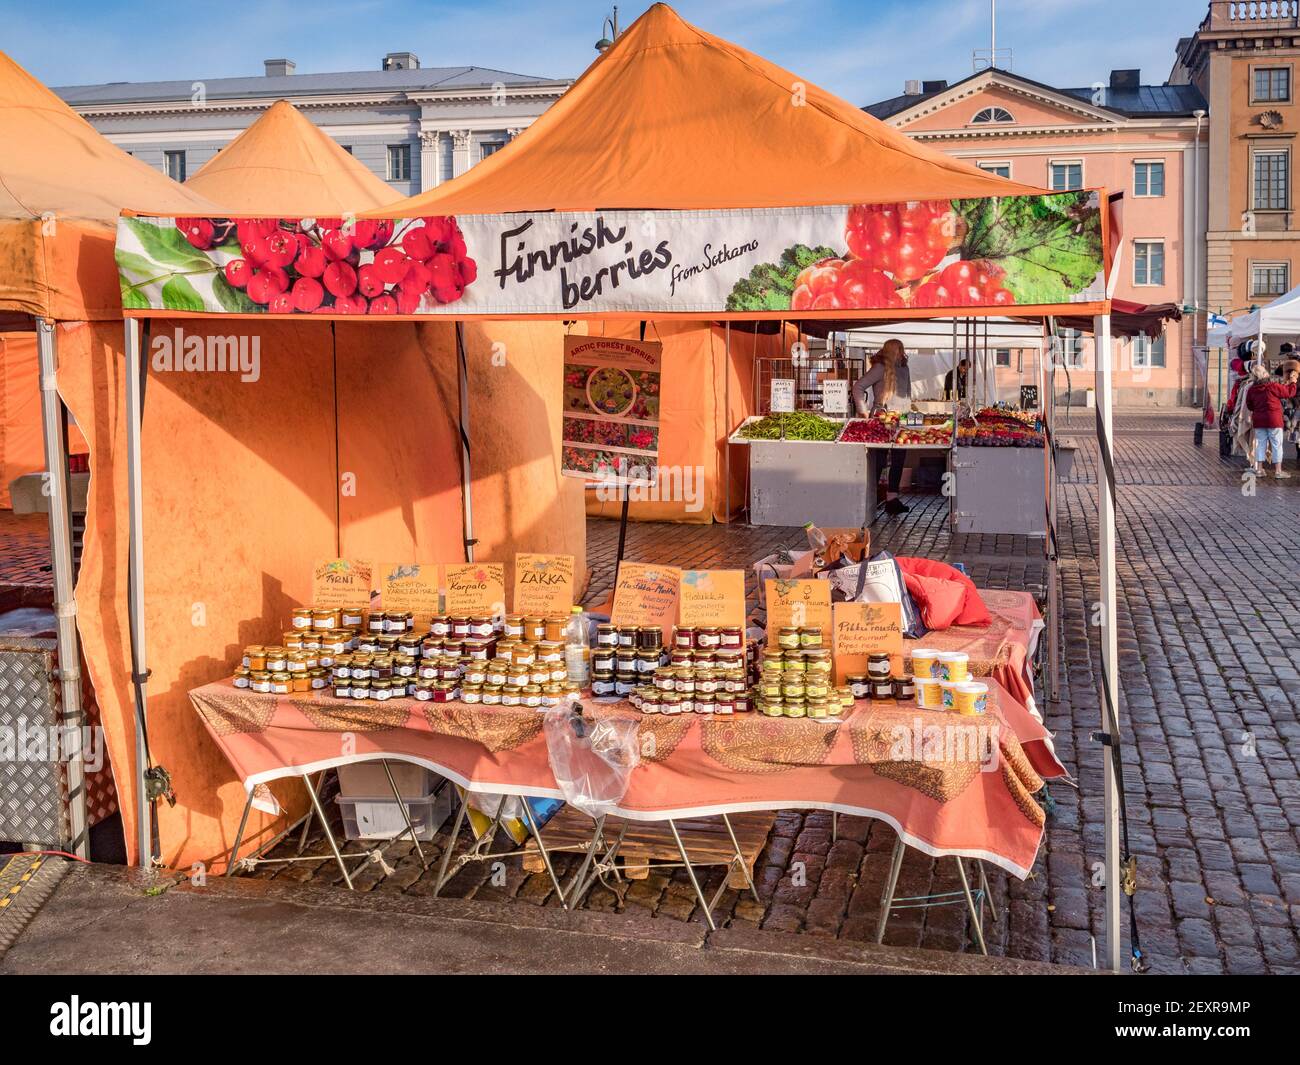 20. September 2018: Helsinki, Finnland - Marktstand auf einem Bauernmarkt auf dem Marktplatz, wo Konfitüren aus lokalen Beeren wie Molteberr verkauft werden Stockfoto